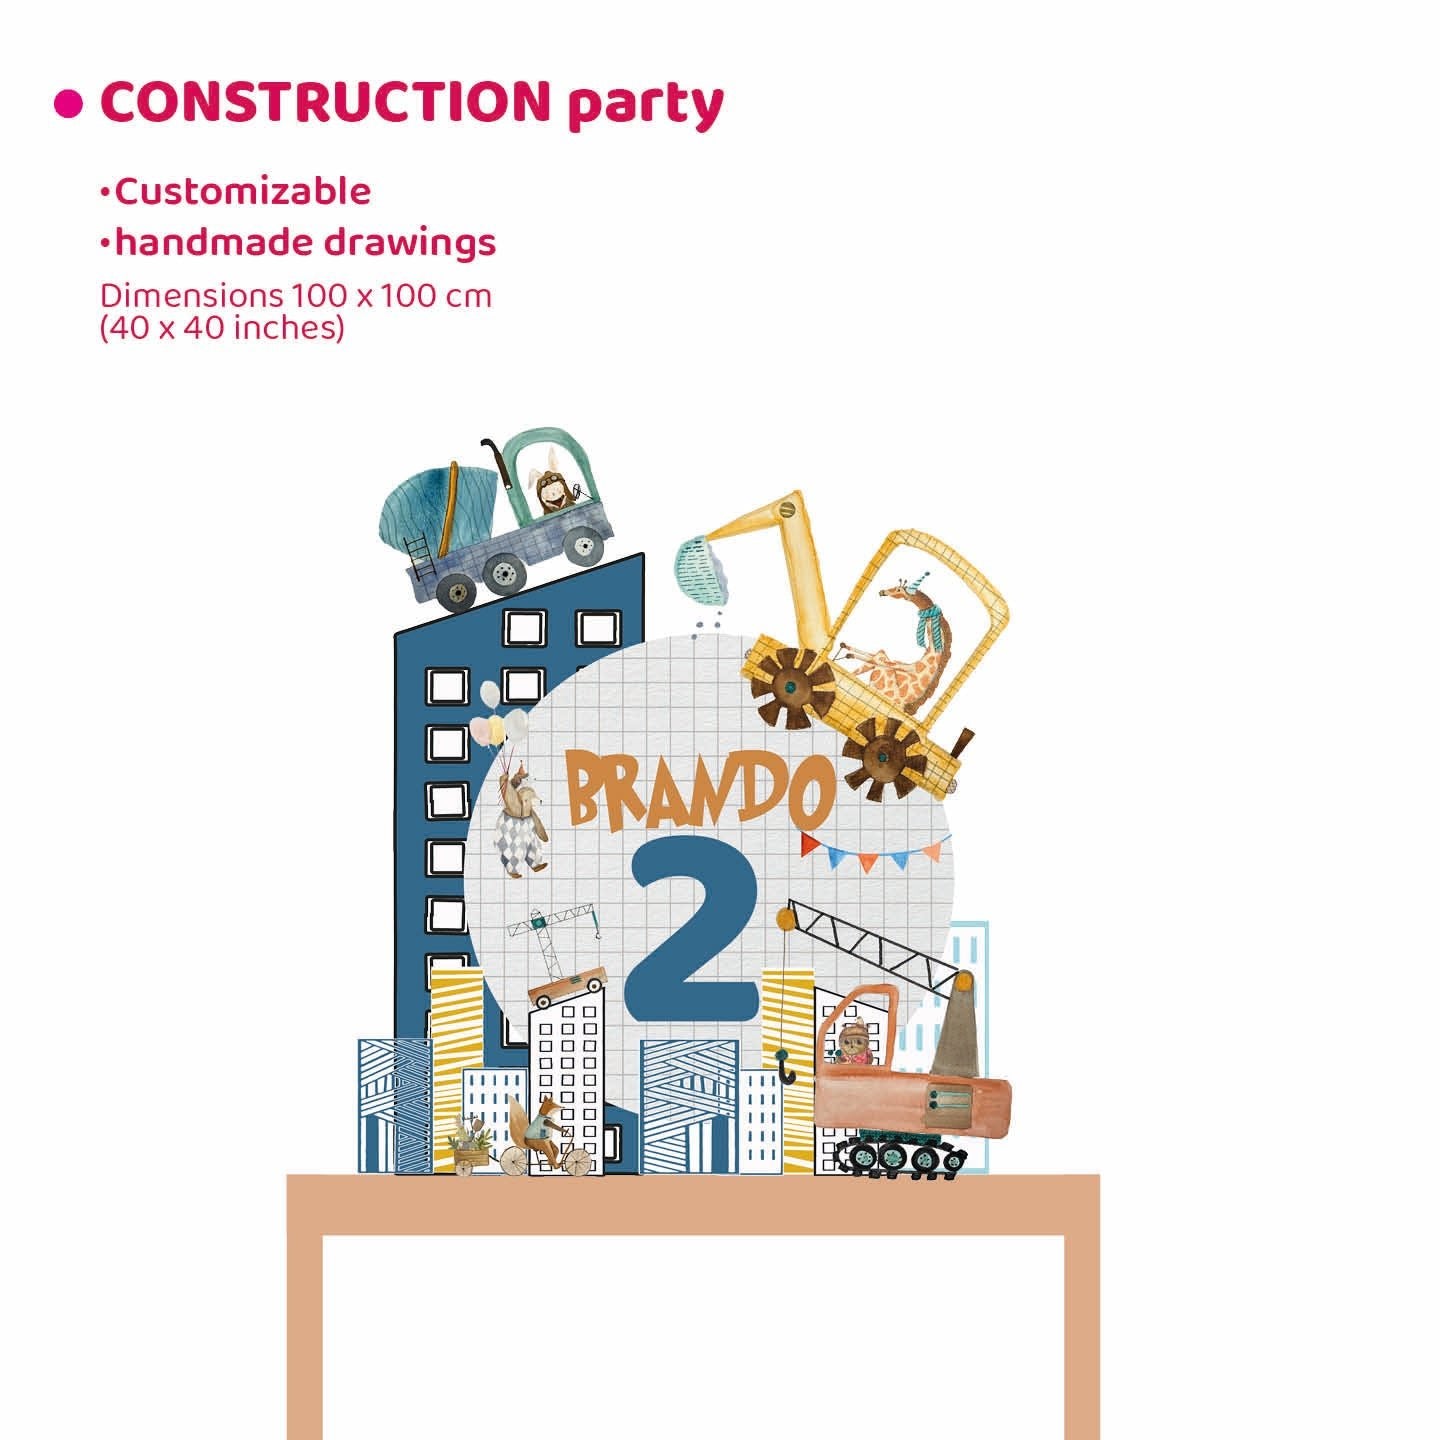 CONSTRUCTION PARTY da appoggio | Addobbi fai da te per feste bambini - Peekaboo